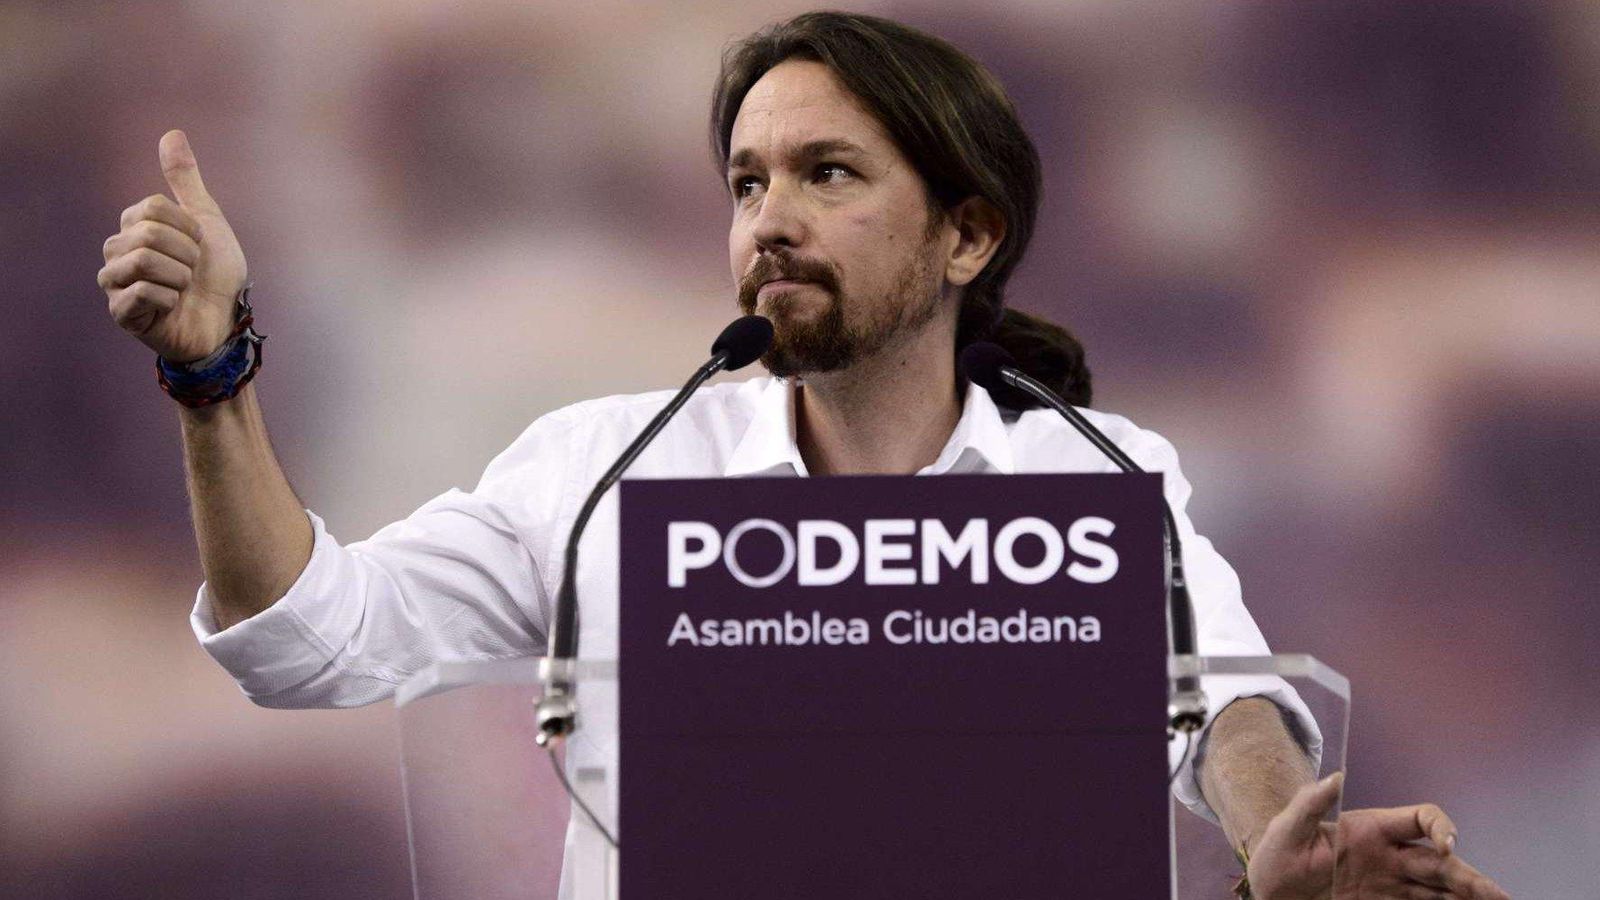 Foto: El líder de Podemos, Pablo Iglesias. (AFP)